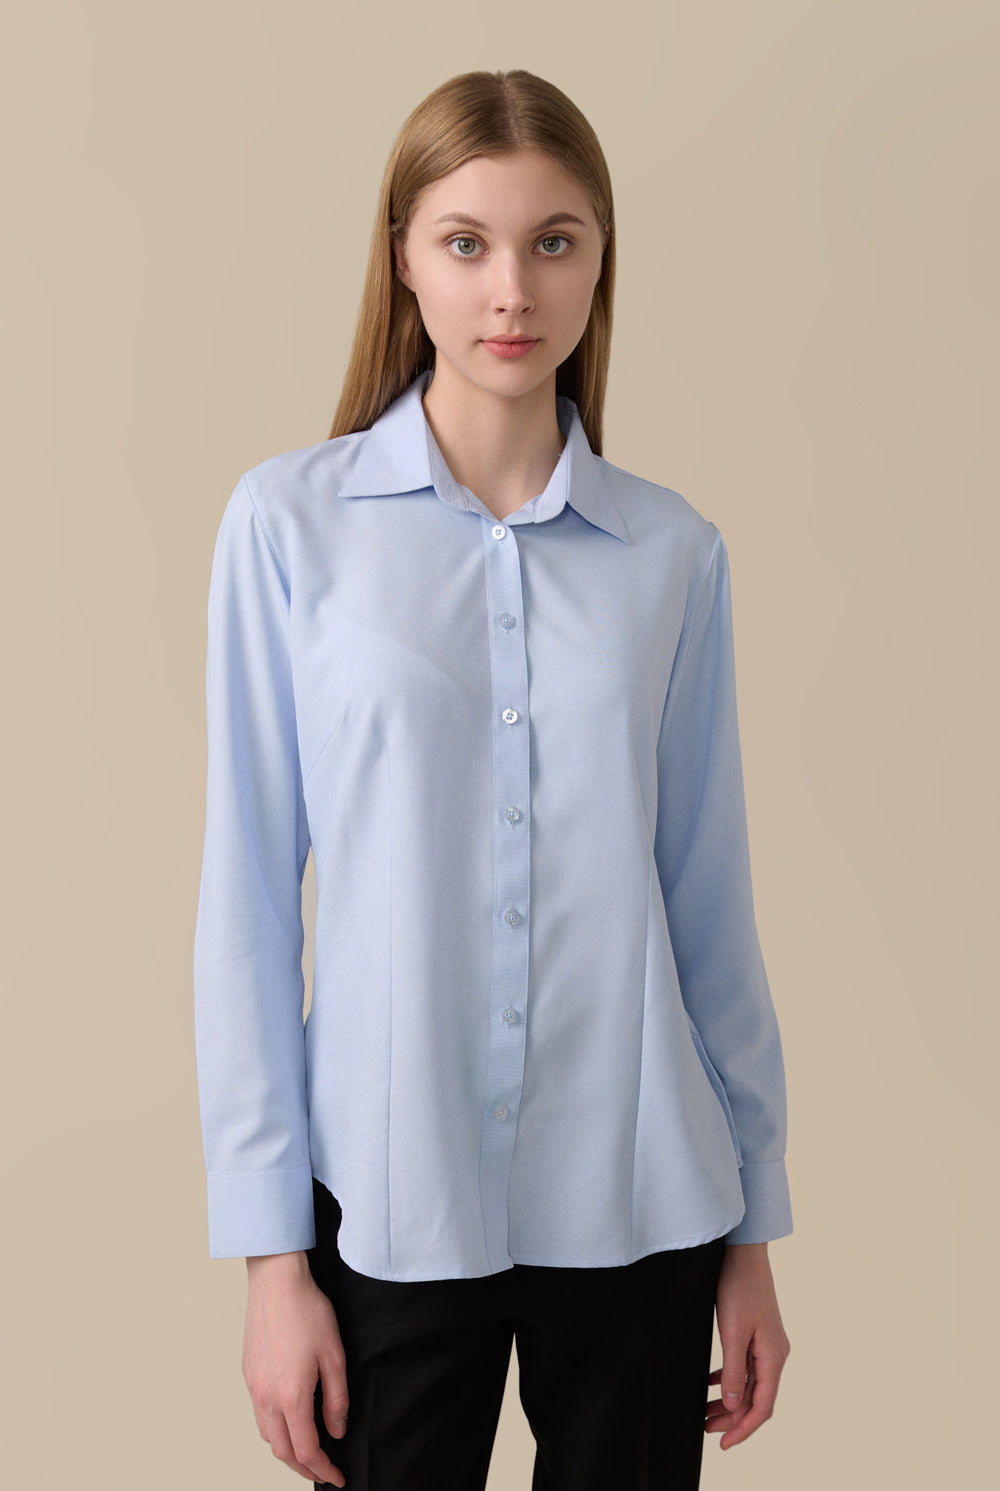 Coffee Dress Shirt for Women - Light Blue